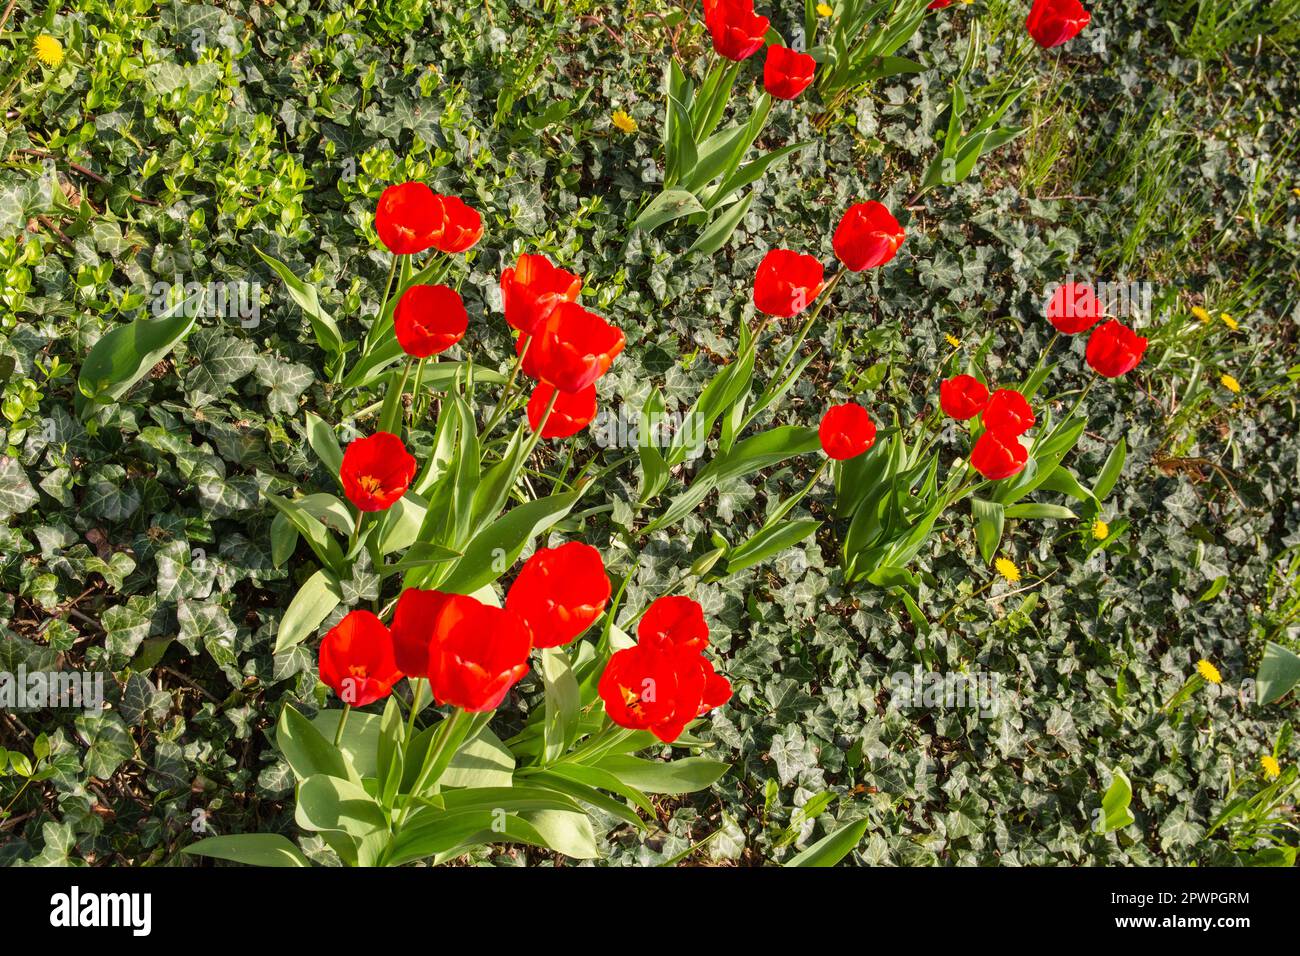 Tulipes rouges fleuris sur un pré vert au soleil. Ressort. Jour. Banque D'Images